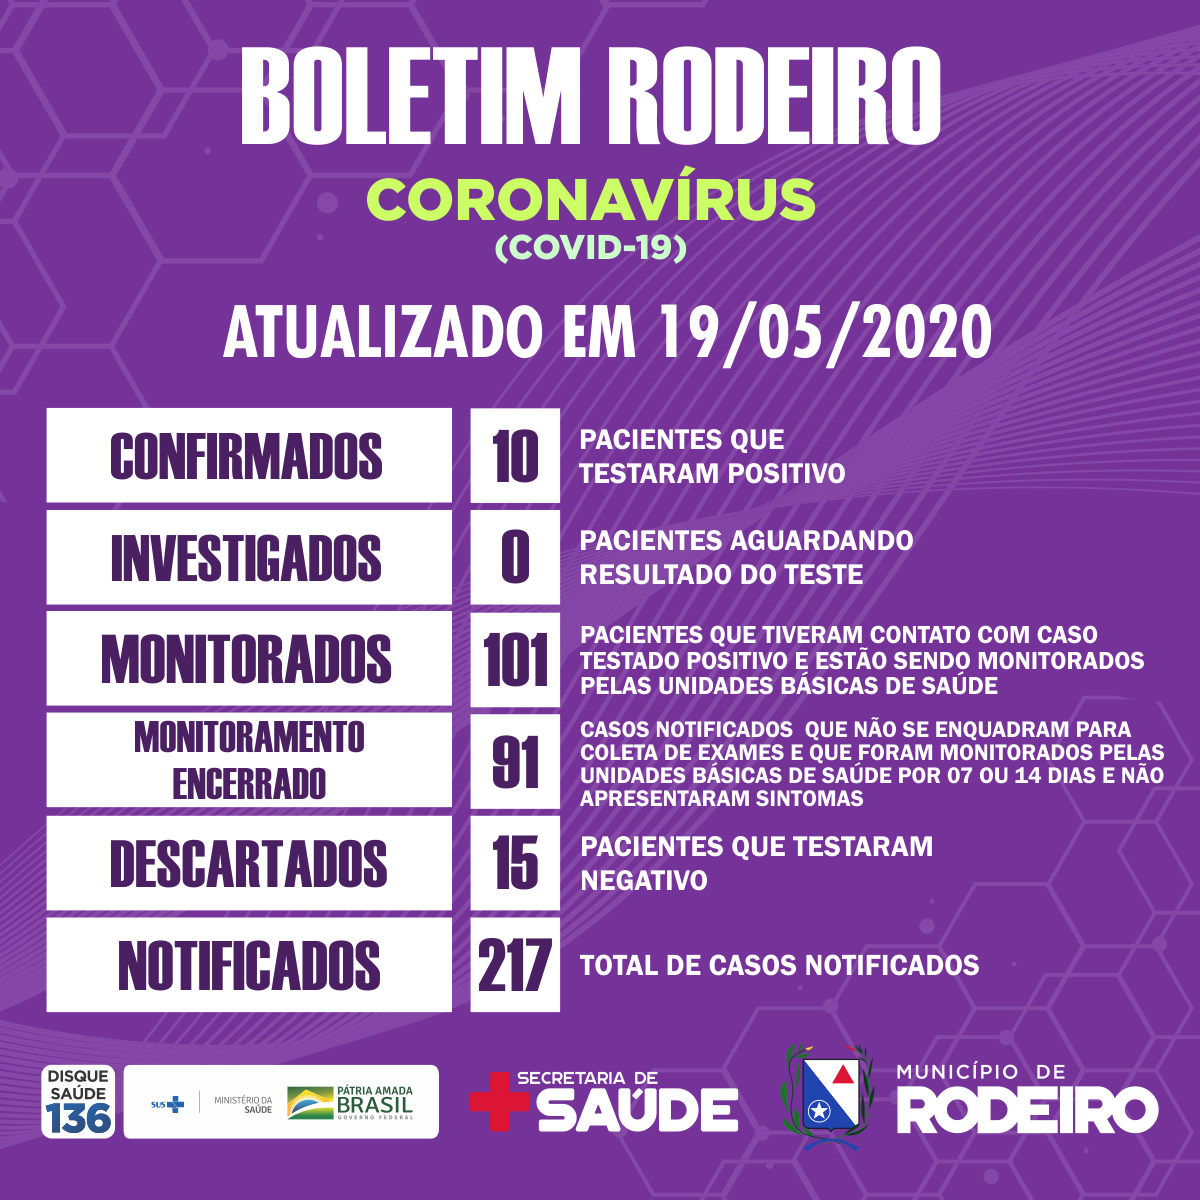 Boletim epidemiológico do Município de Rodeiro, atualização sobre coronavírus em 19/05/2020